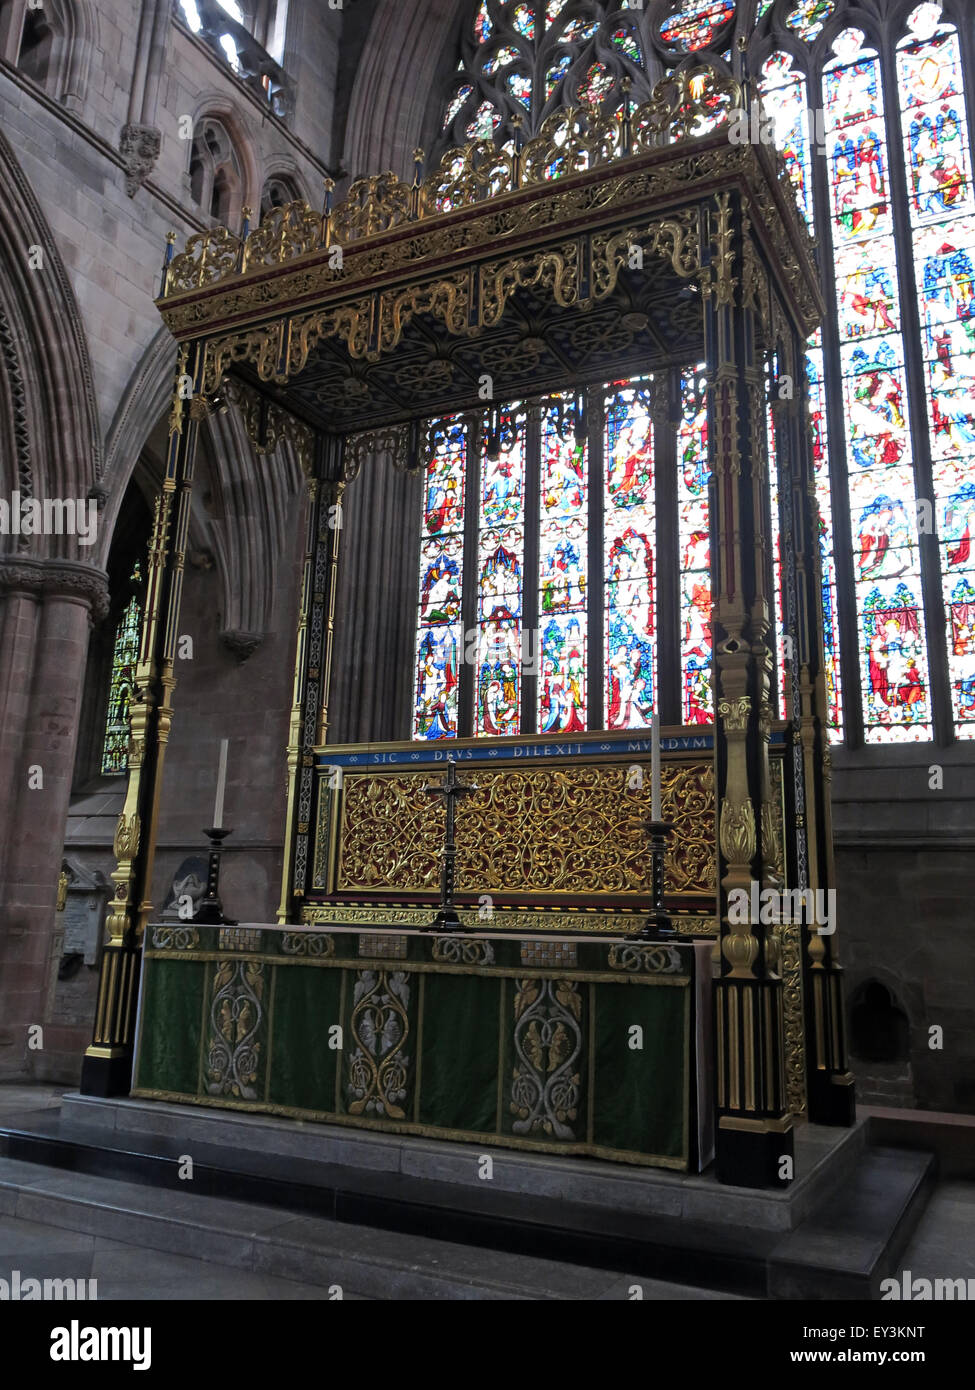 Église de la Sainte Trinité et Trinité indivise - autel en bois et vitraux, cathédrale de Carlisle, Cumbria, Angleterre, Royaume-Uni Banque D'Images